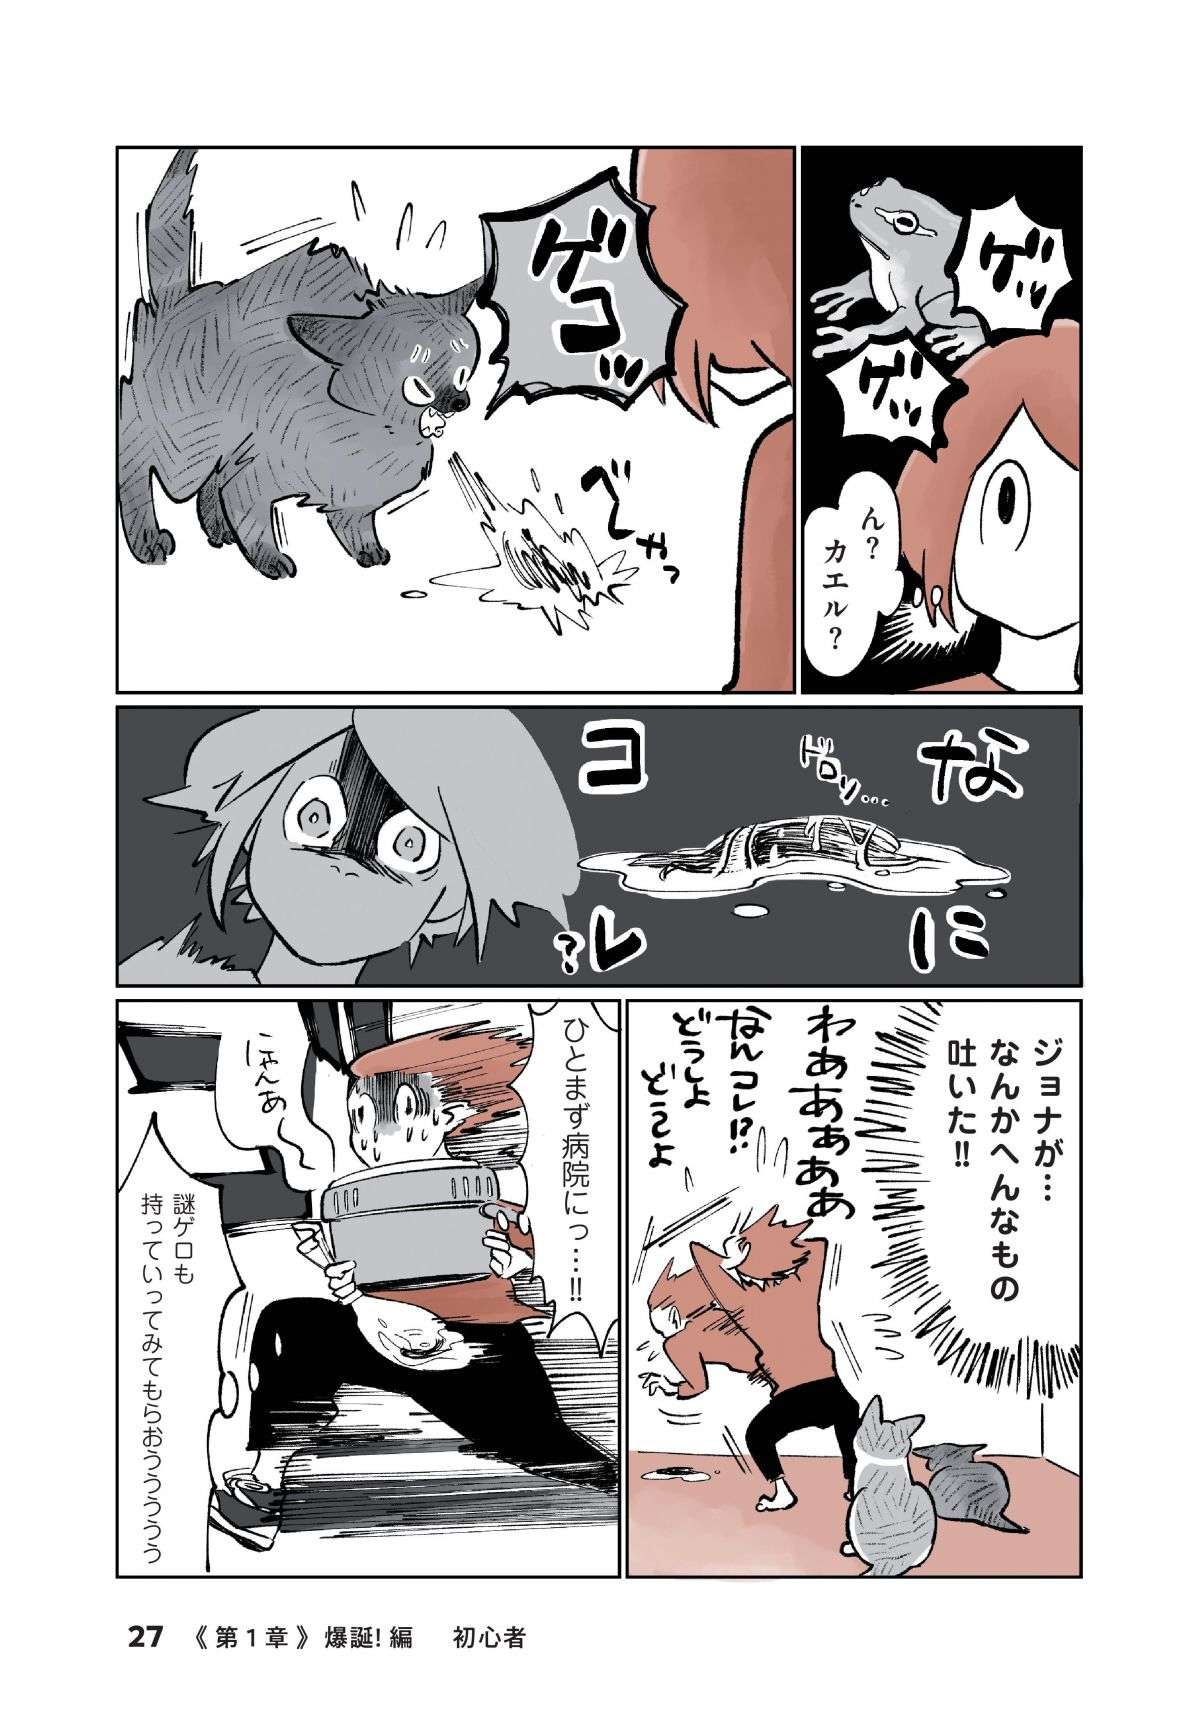 「なんか吐いた！」猫飼い初心者が焦って病院に駆け込むと、先生は「意外な反応」で...／こねこのドレイ koneko_dorei3-2.jpg